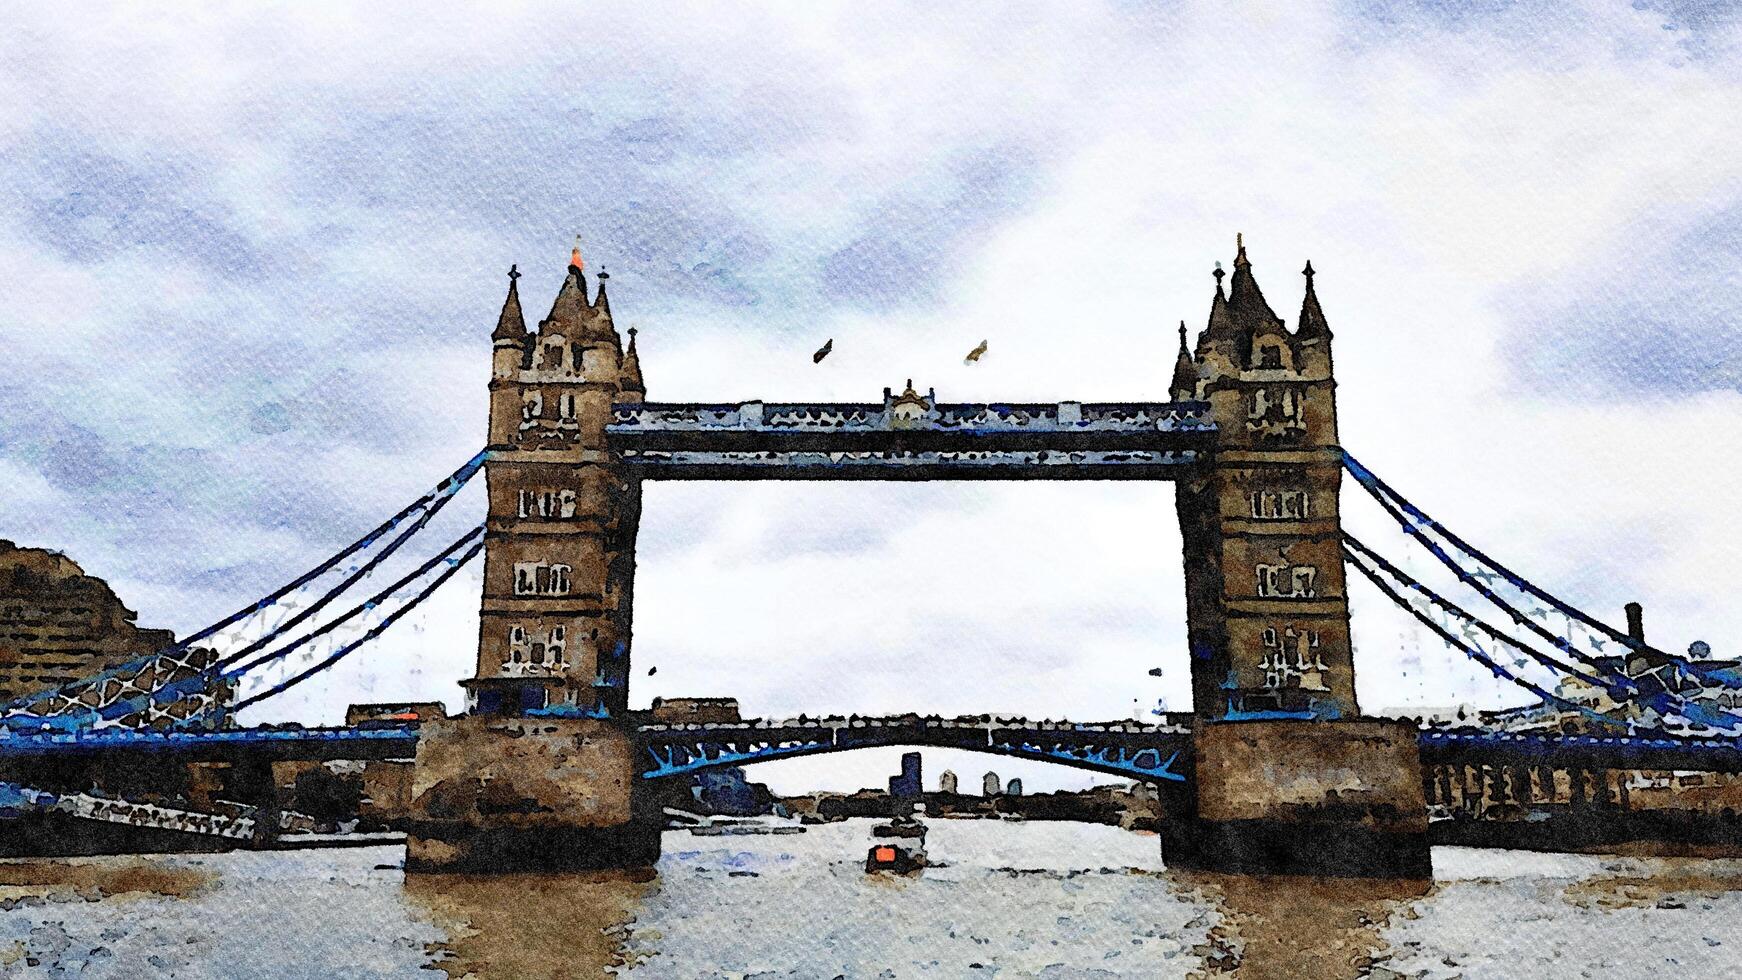 een avond glimp van de beroemd Londen brug in Engeland. digitaal waterverf stijl. foto